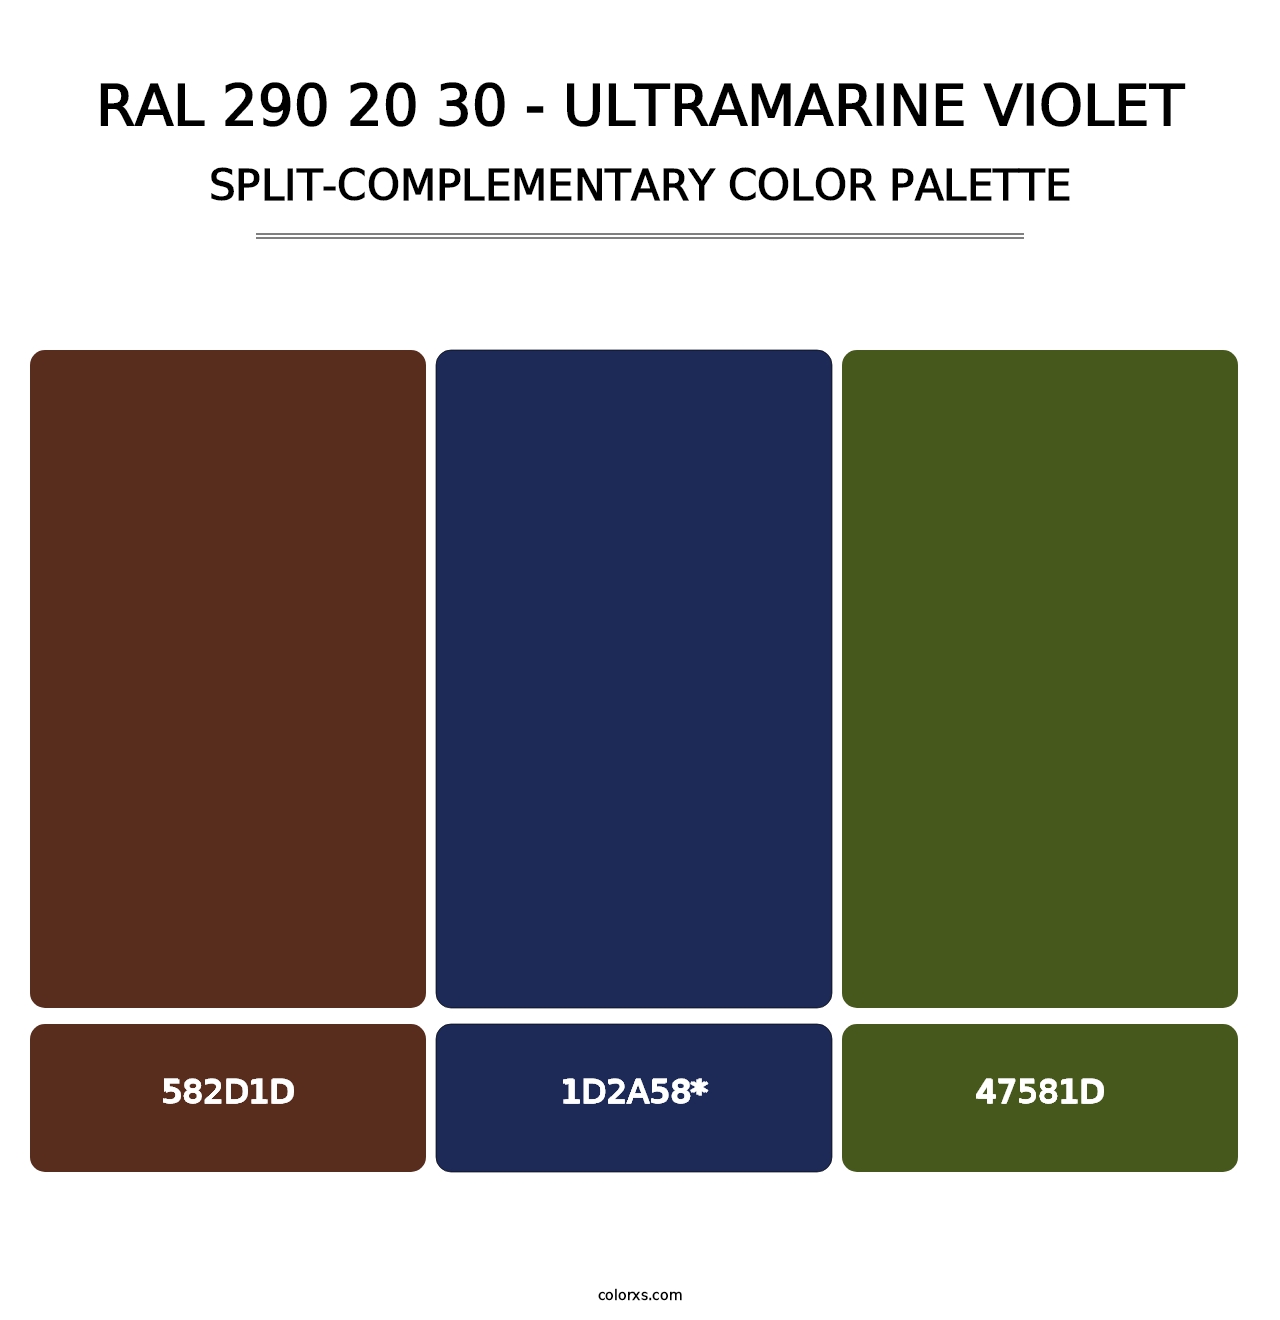 RAL 290 20 30 - Ultramarine Violet - Split-Complementary Color Palette